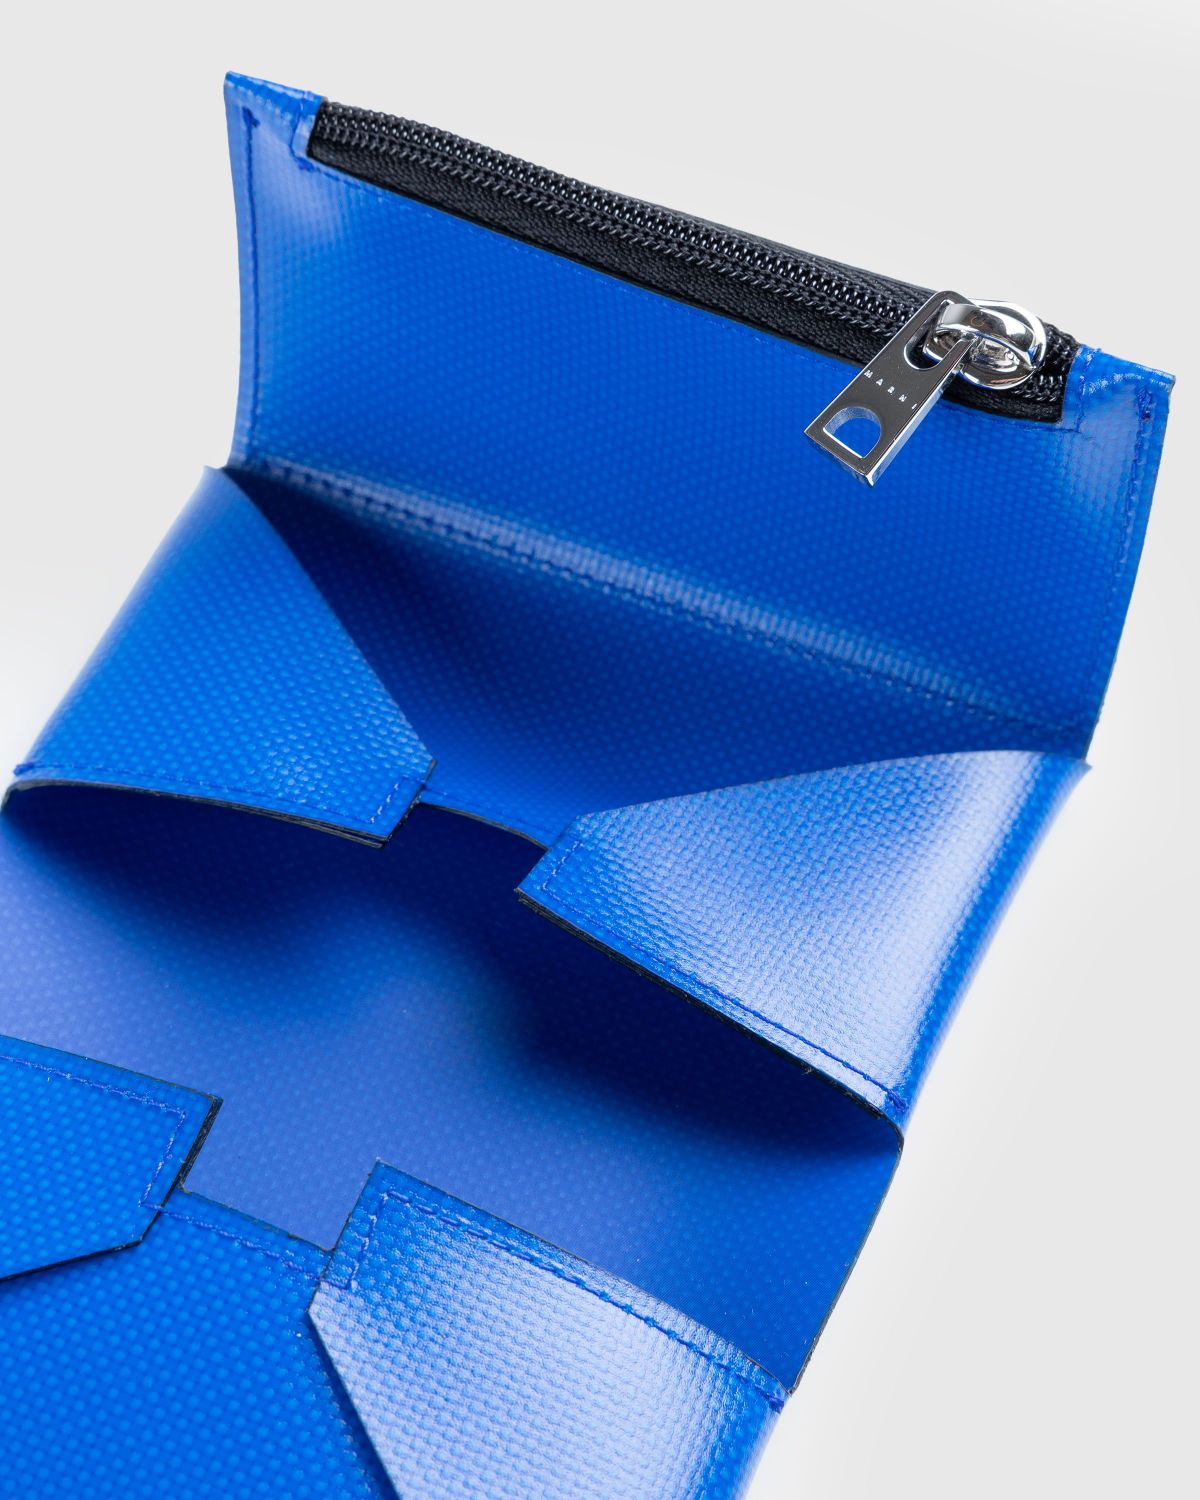 Marni – Origami Card Holder Blue | Highsnobiety Shop